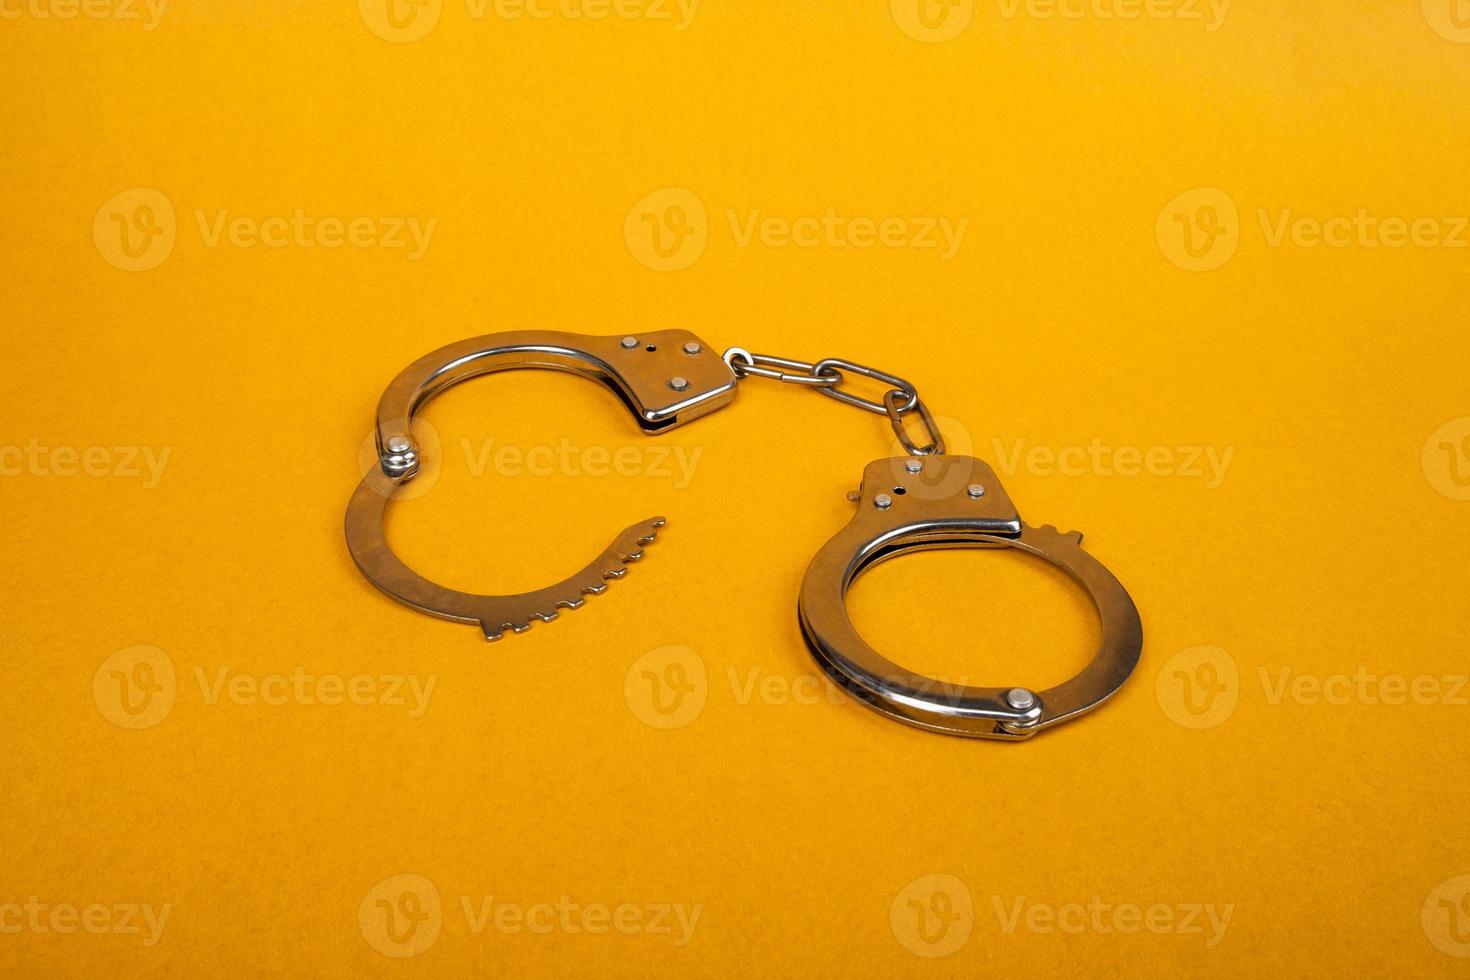 metalen handboeien op een gele achtergrond, concept van arrestatie foto